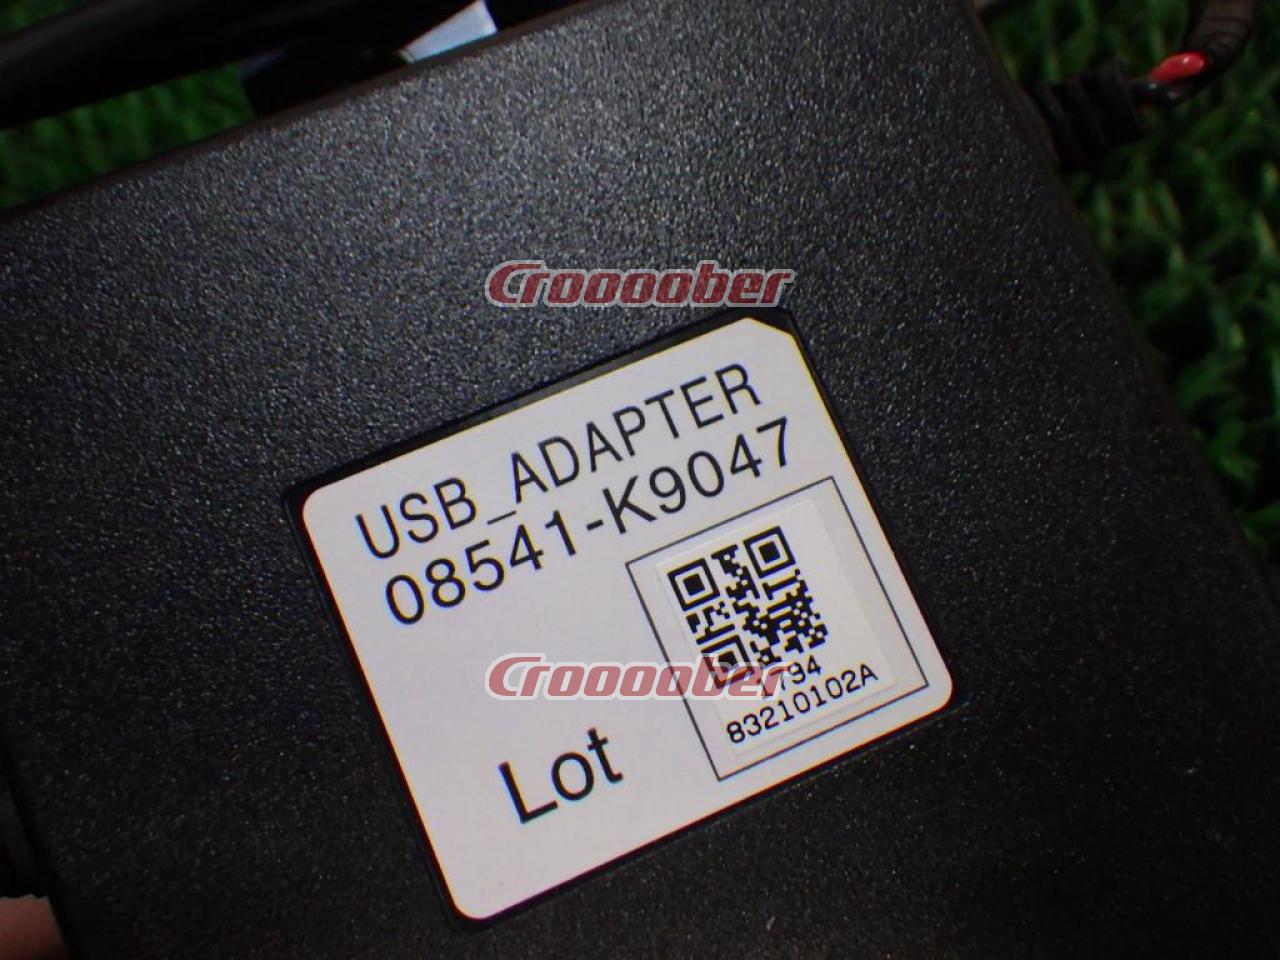 ダイハツ純正(DAIHATSU)オプション USBアダプター(08541-K9047) カーAVアクセサリー  オーディオカプラー・ケーブル類パーツの通販なら Croooober(クルーバー)